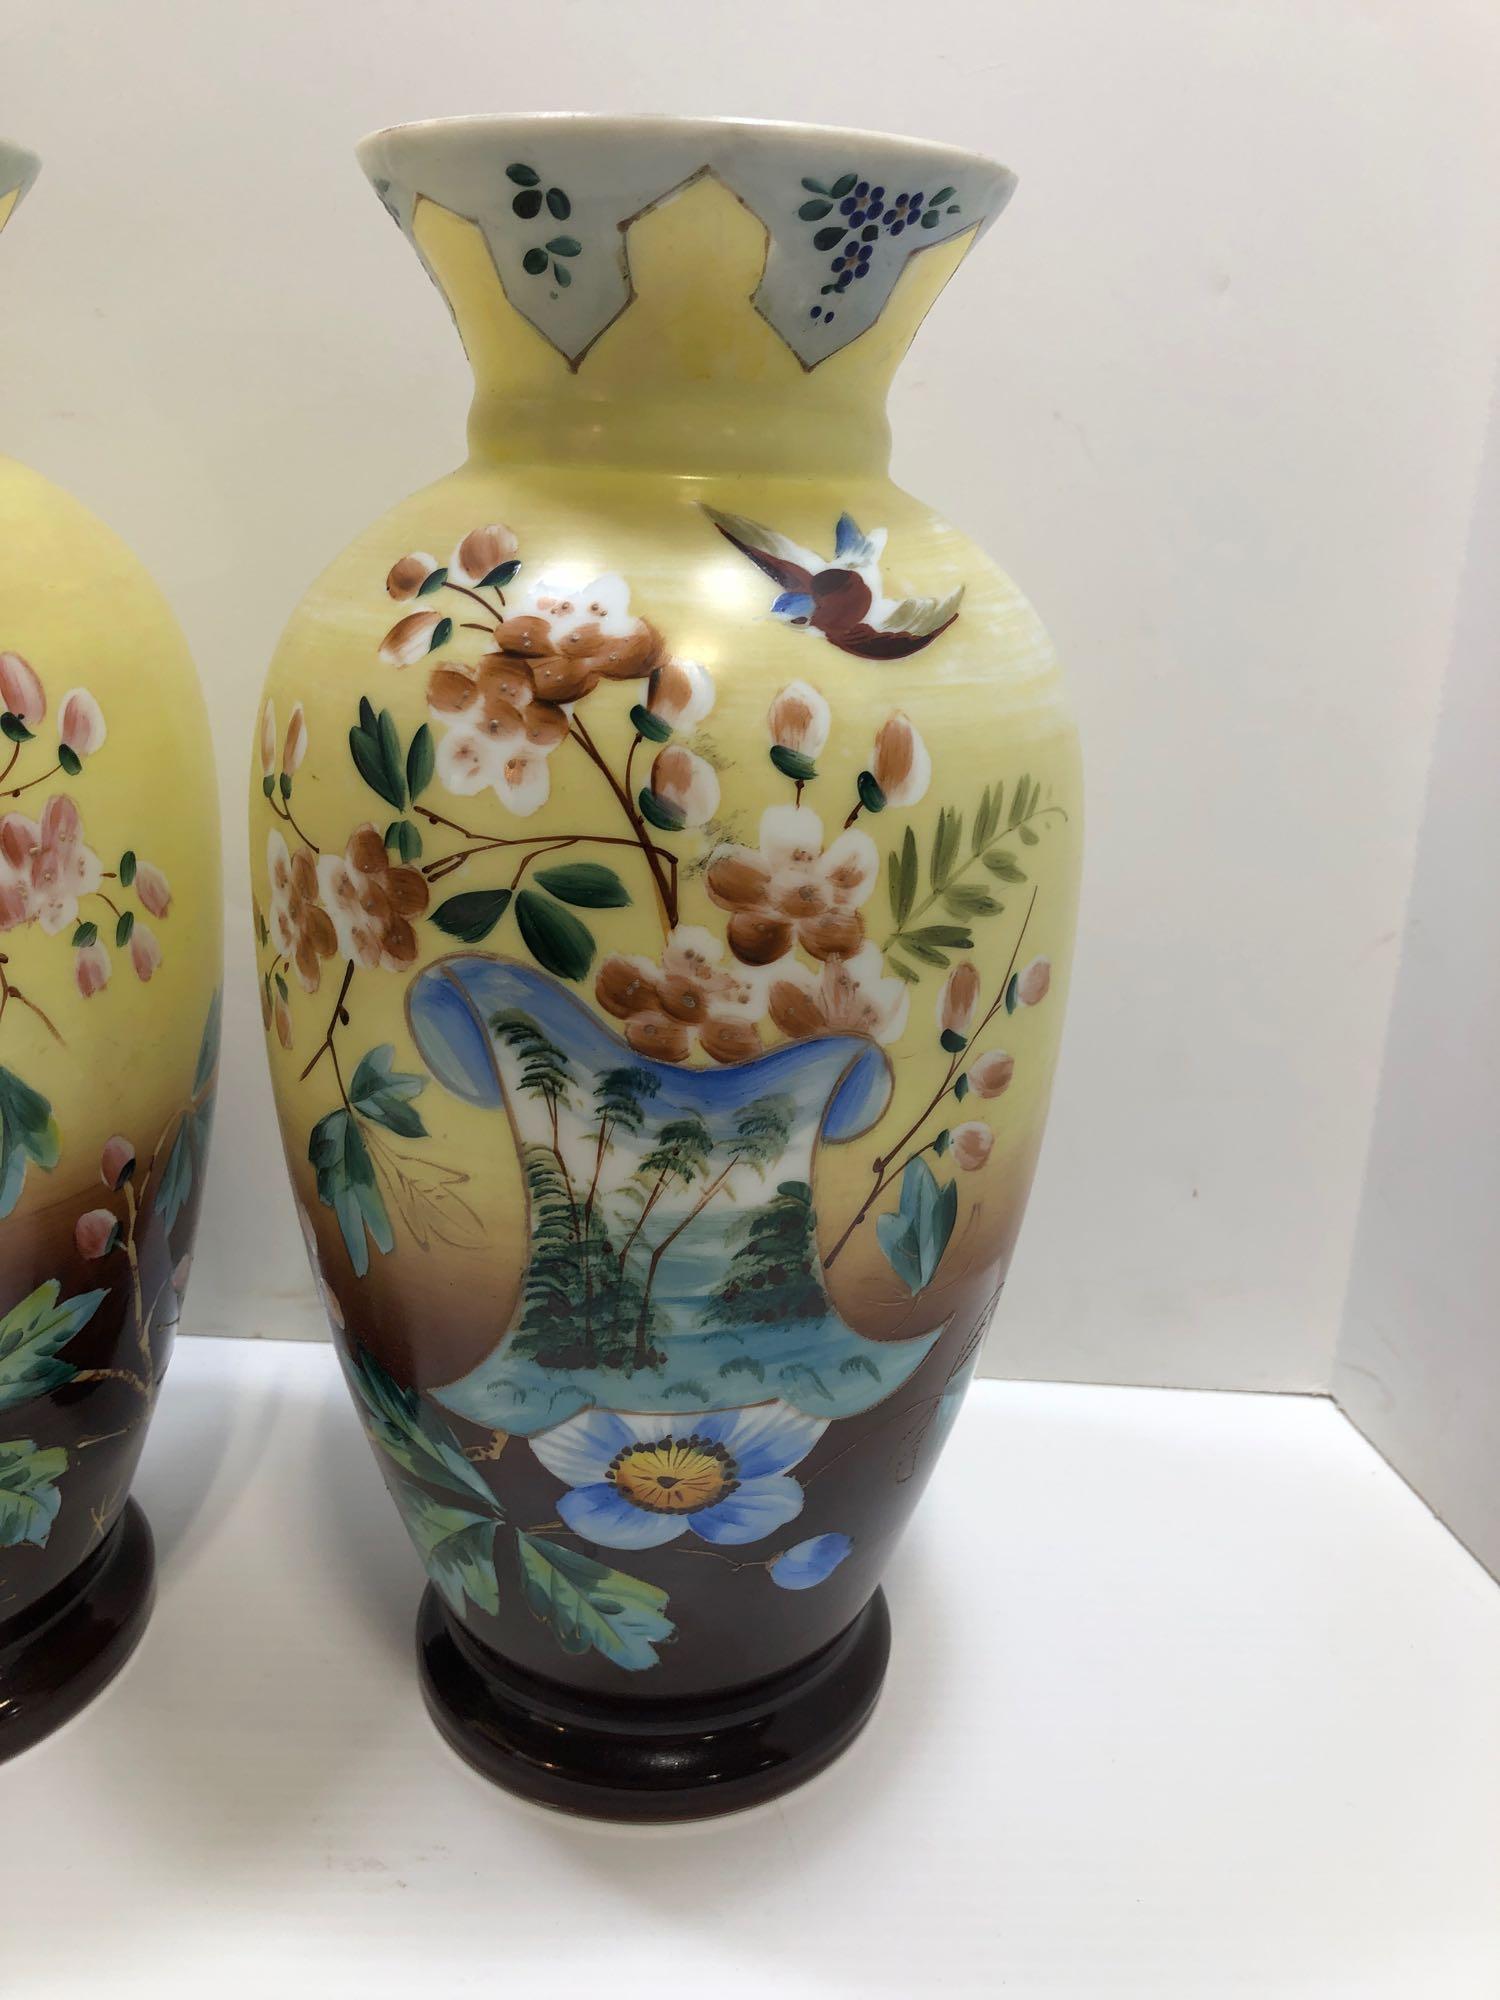 Matching porcelain vases